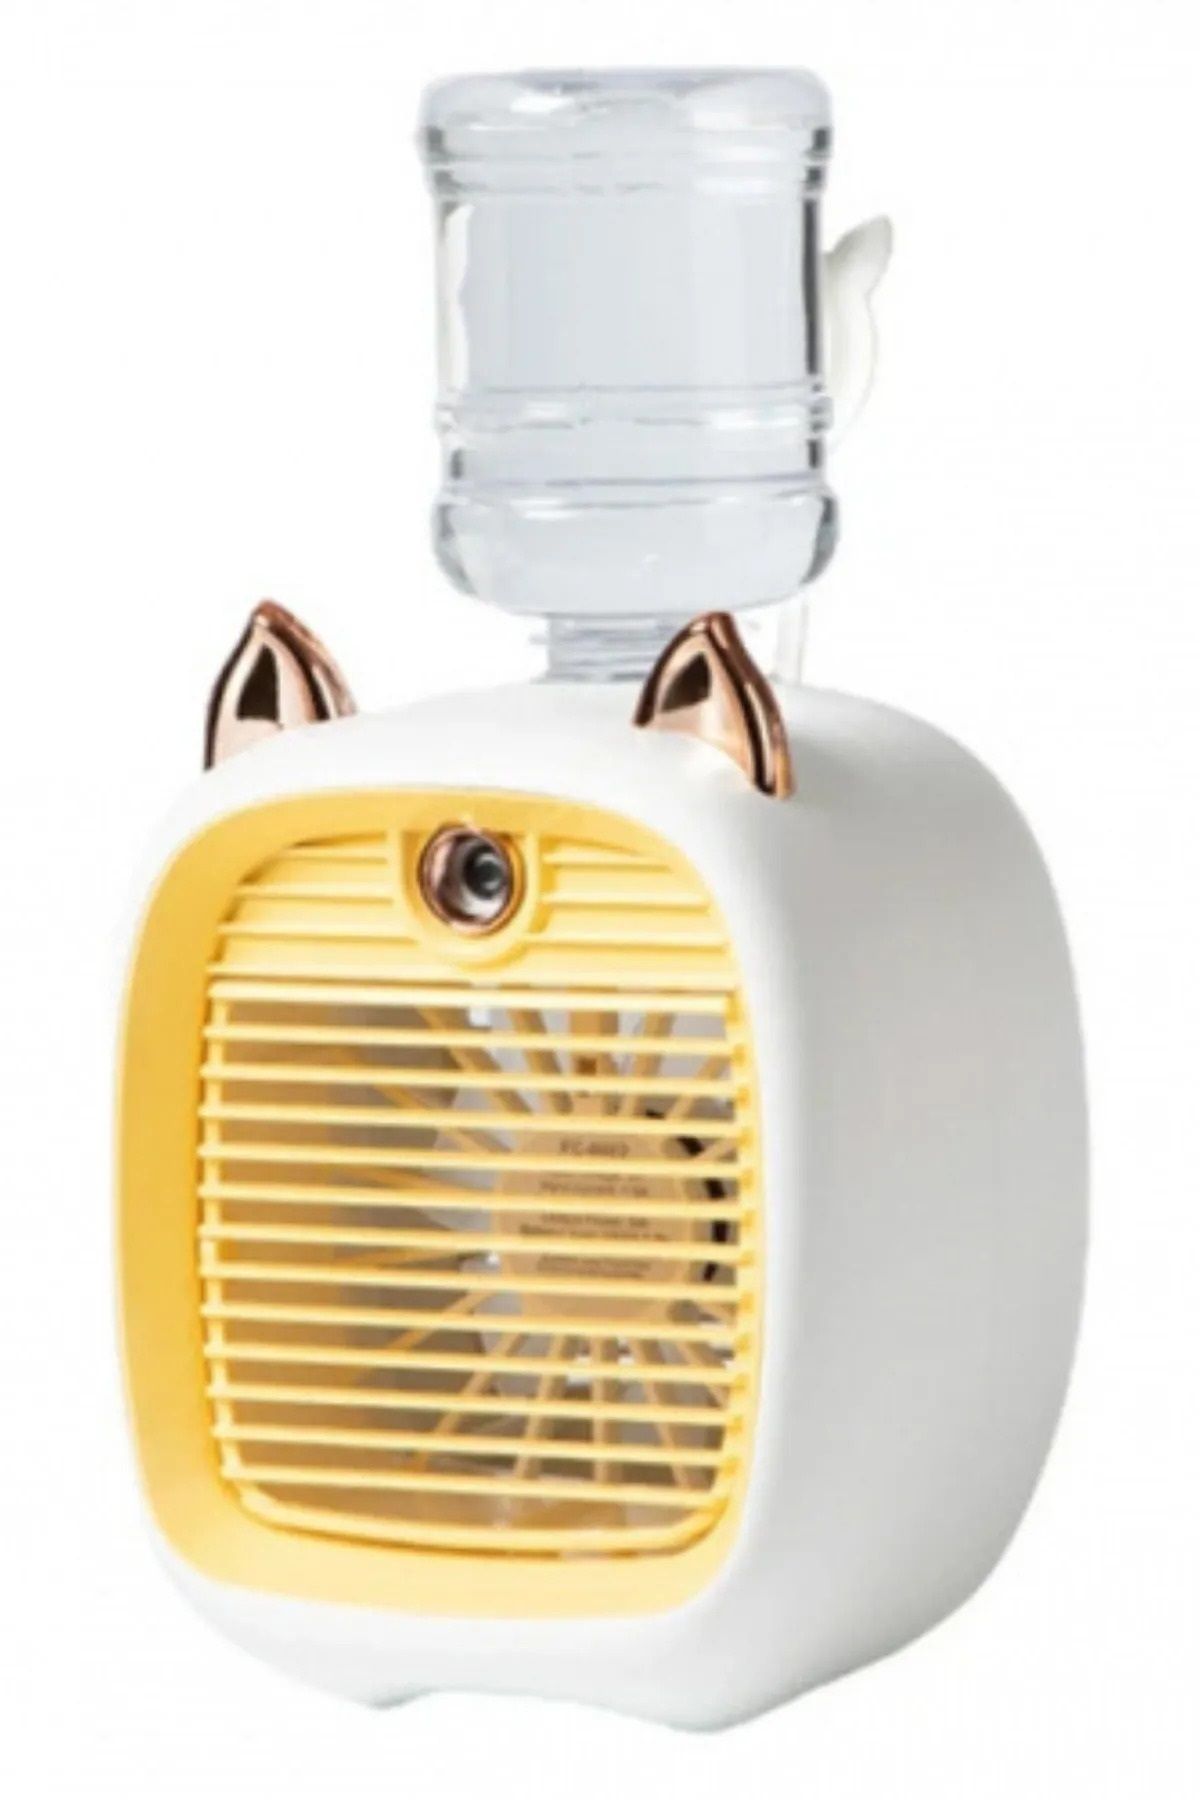 EBRTECH Nemlendiricili Masaüstü Fan Taşınabilir Mini Klima Bataryalı